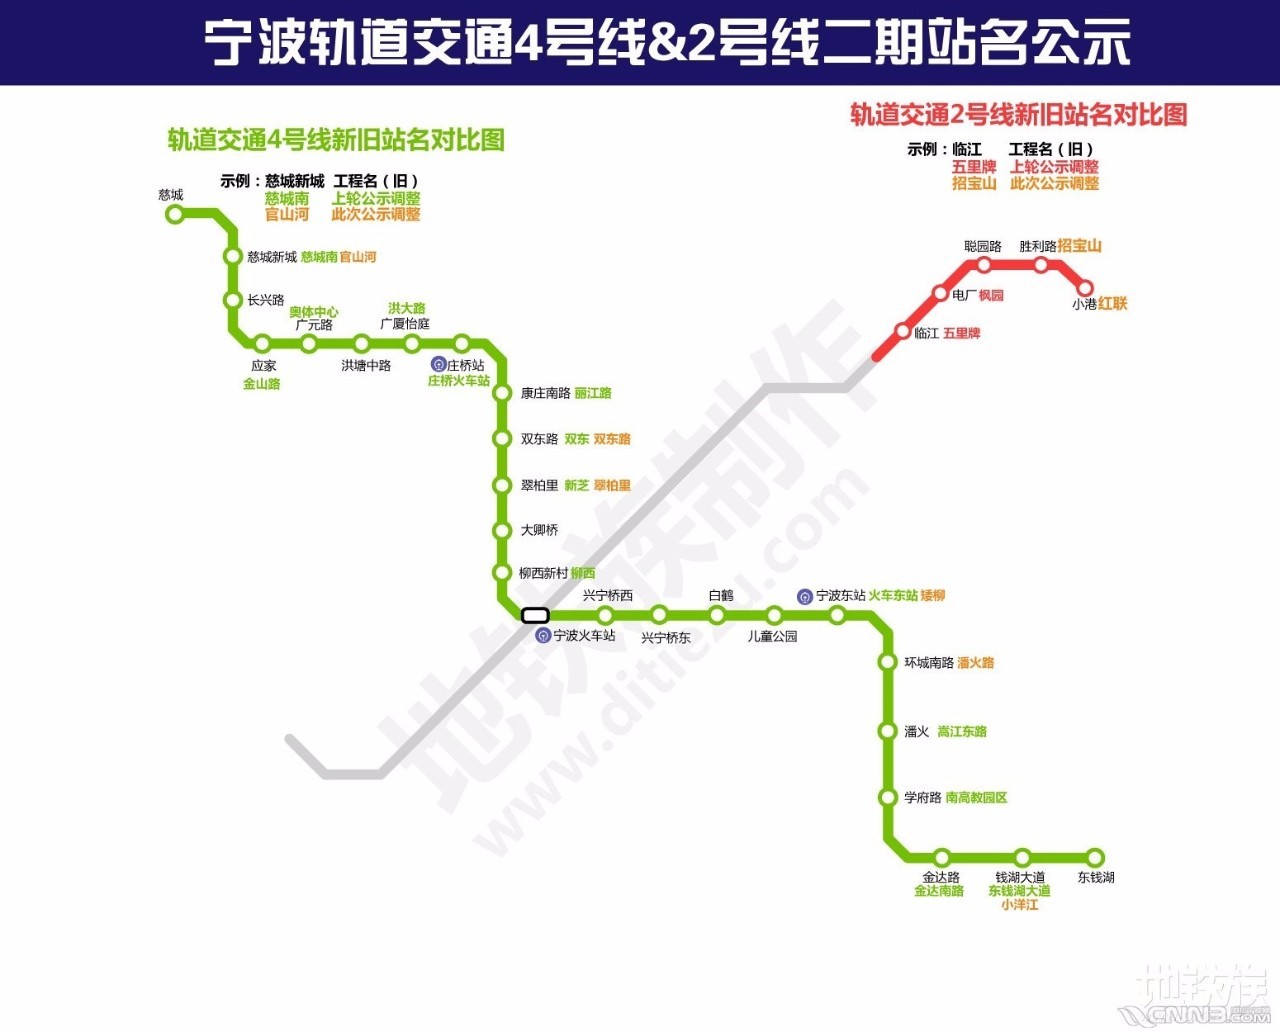 宁波轨道交通2号线二期北仑段建设方案确定!